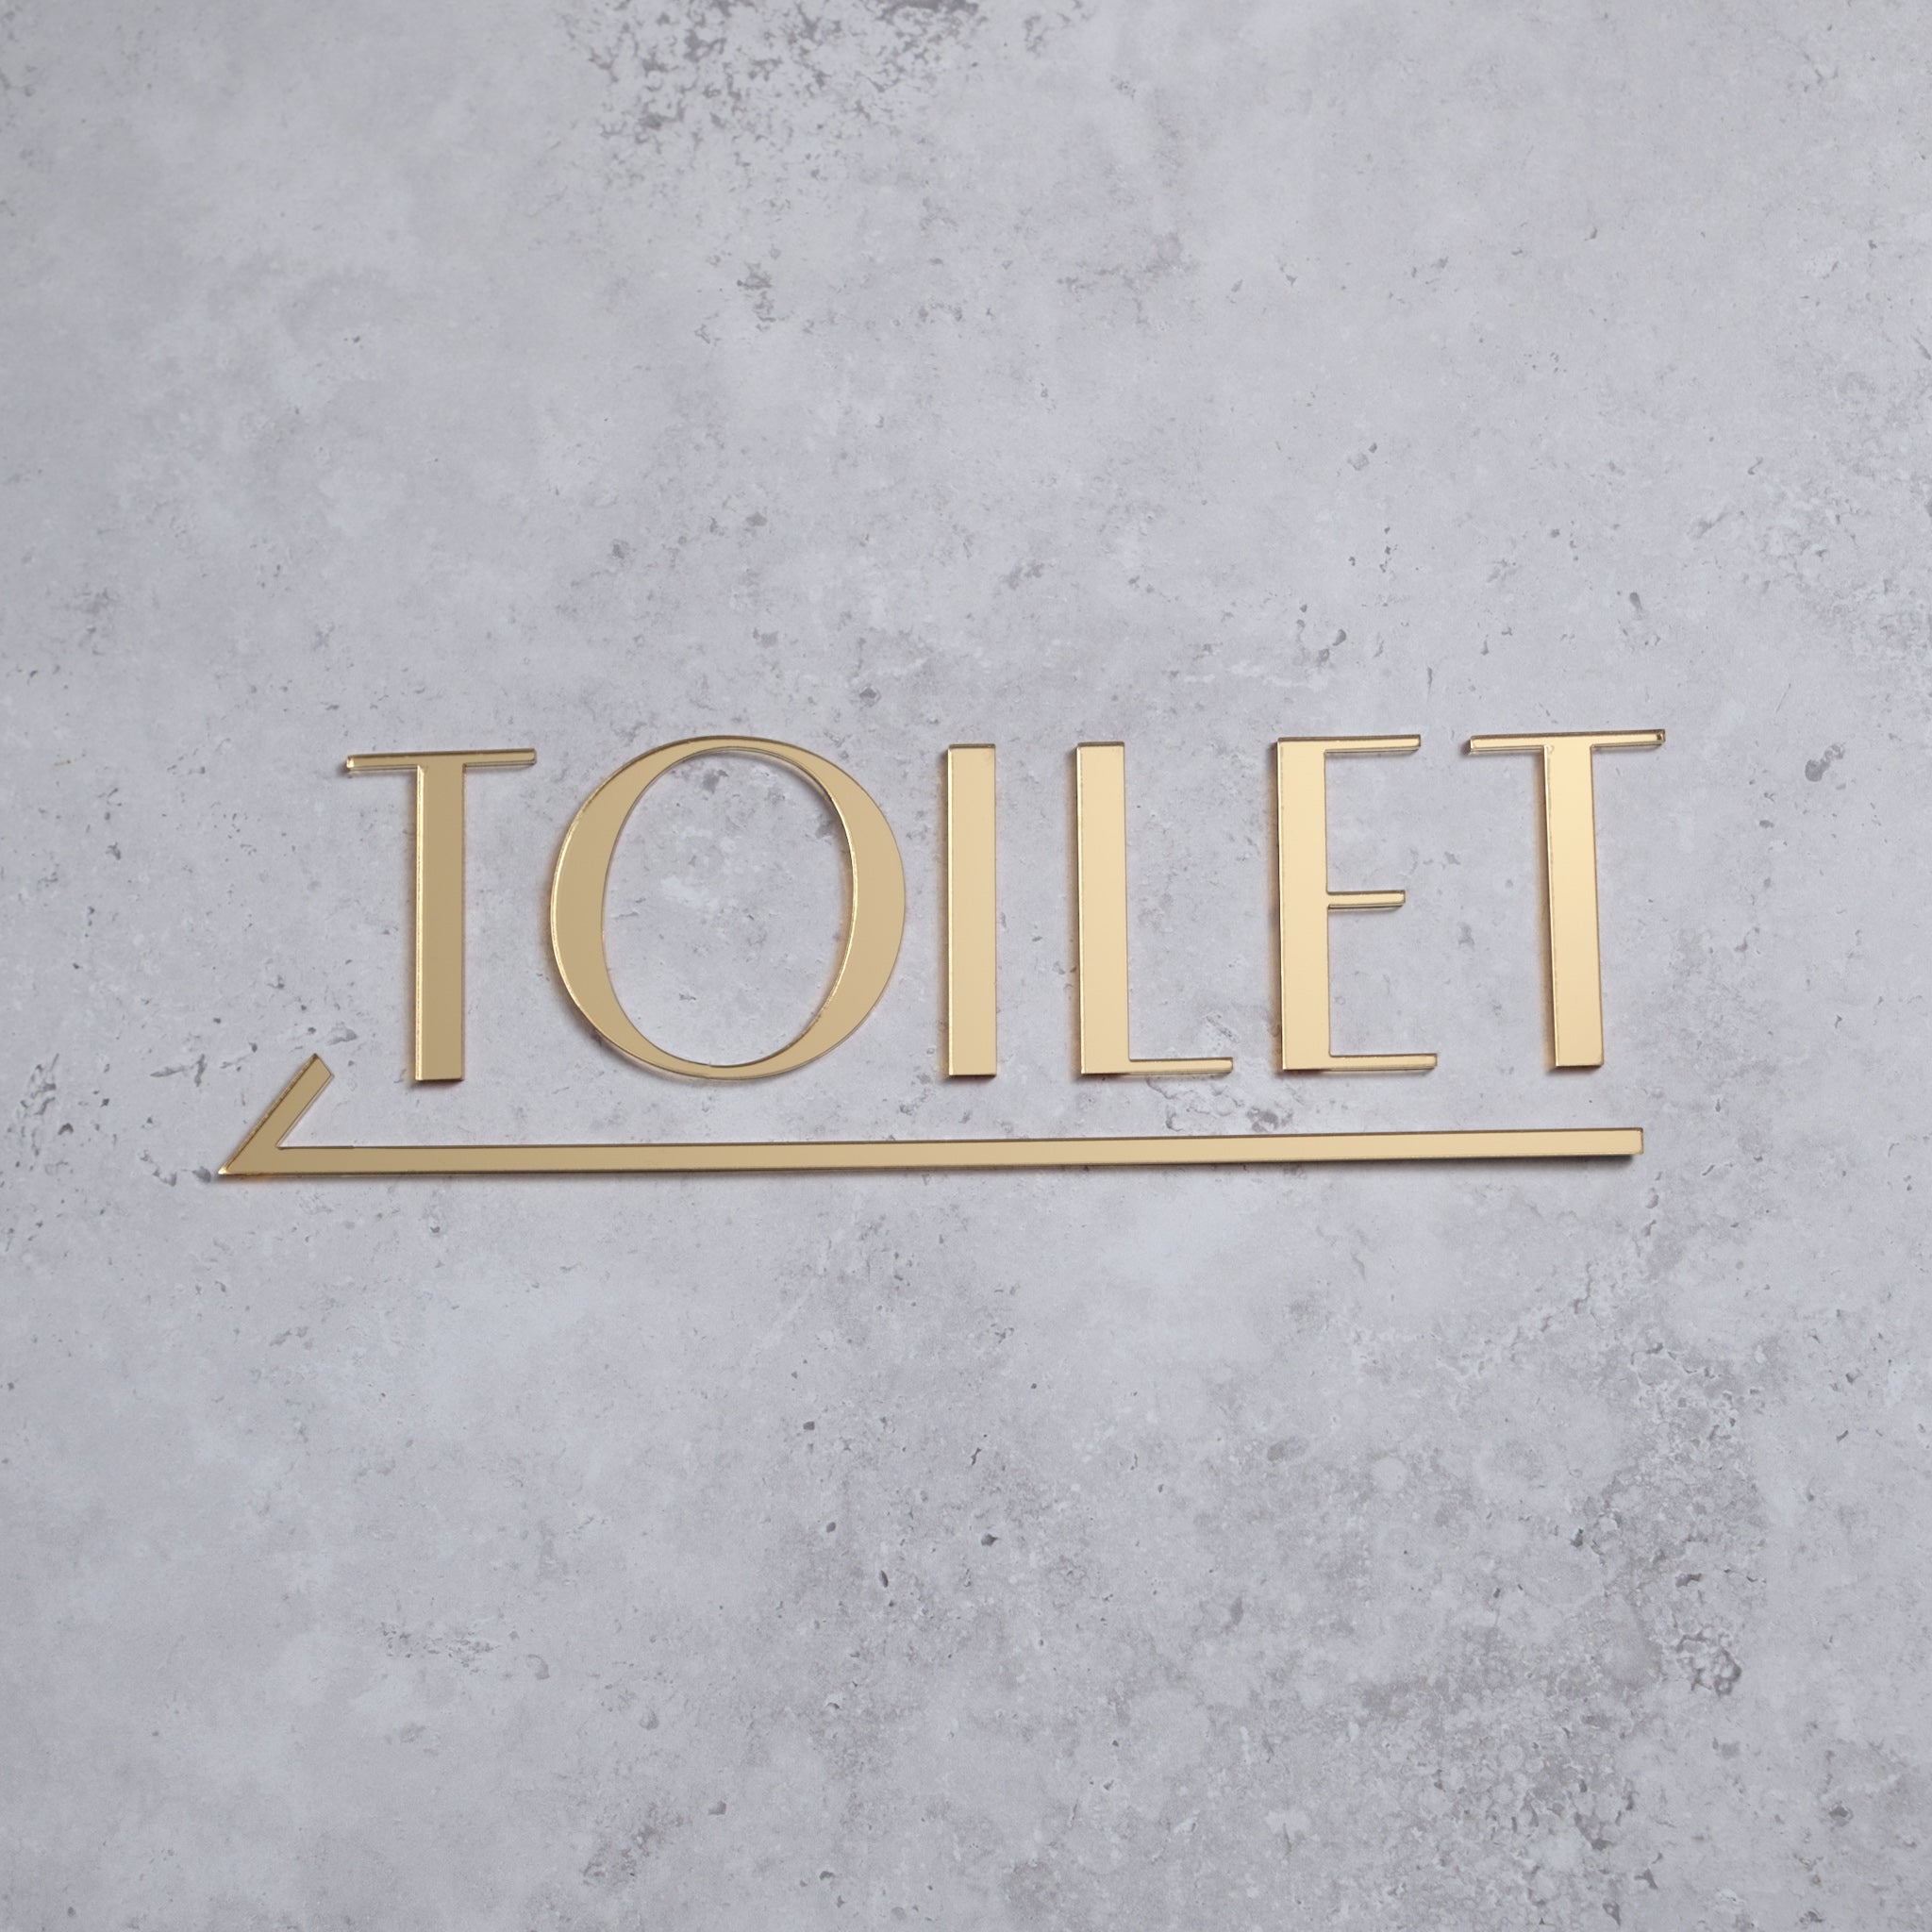 Toilet door signs